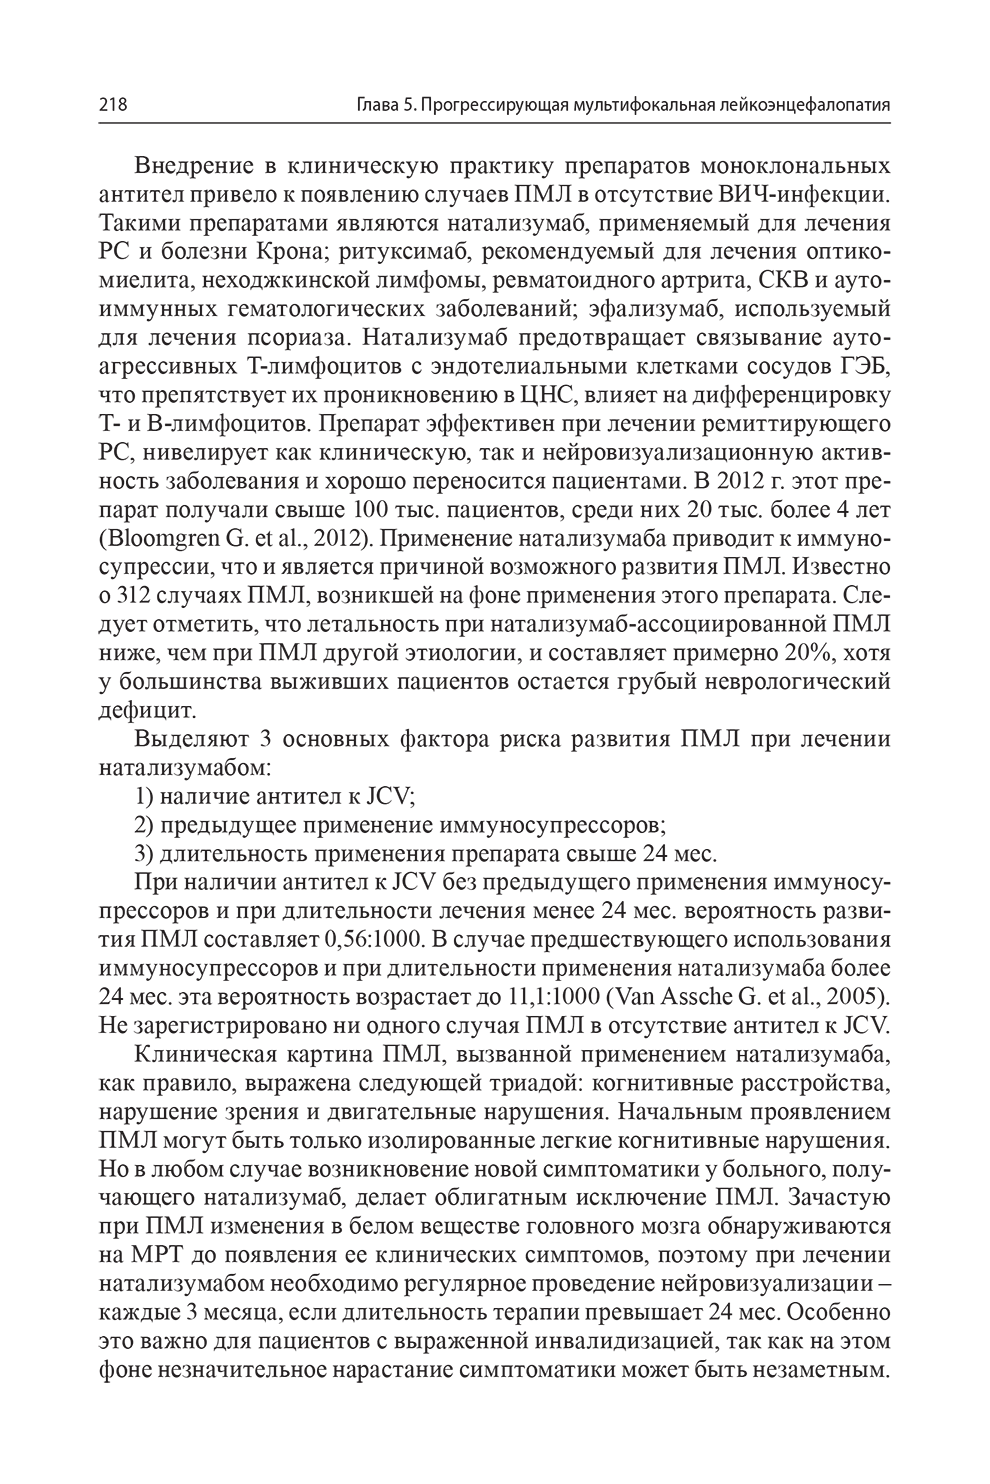 Пример страницы из книги "Миелинопатии у детей" - Пальчик А. Б., Скрипченко Е. Ю., Фомина М. Ю.